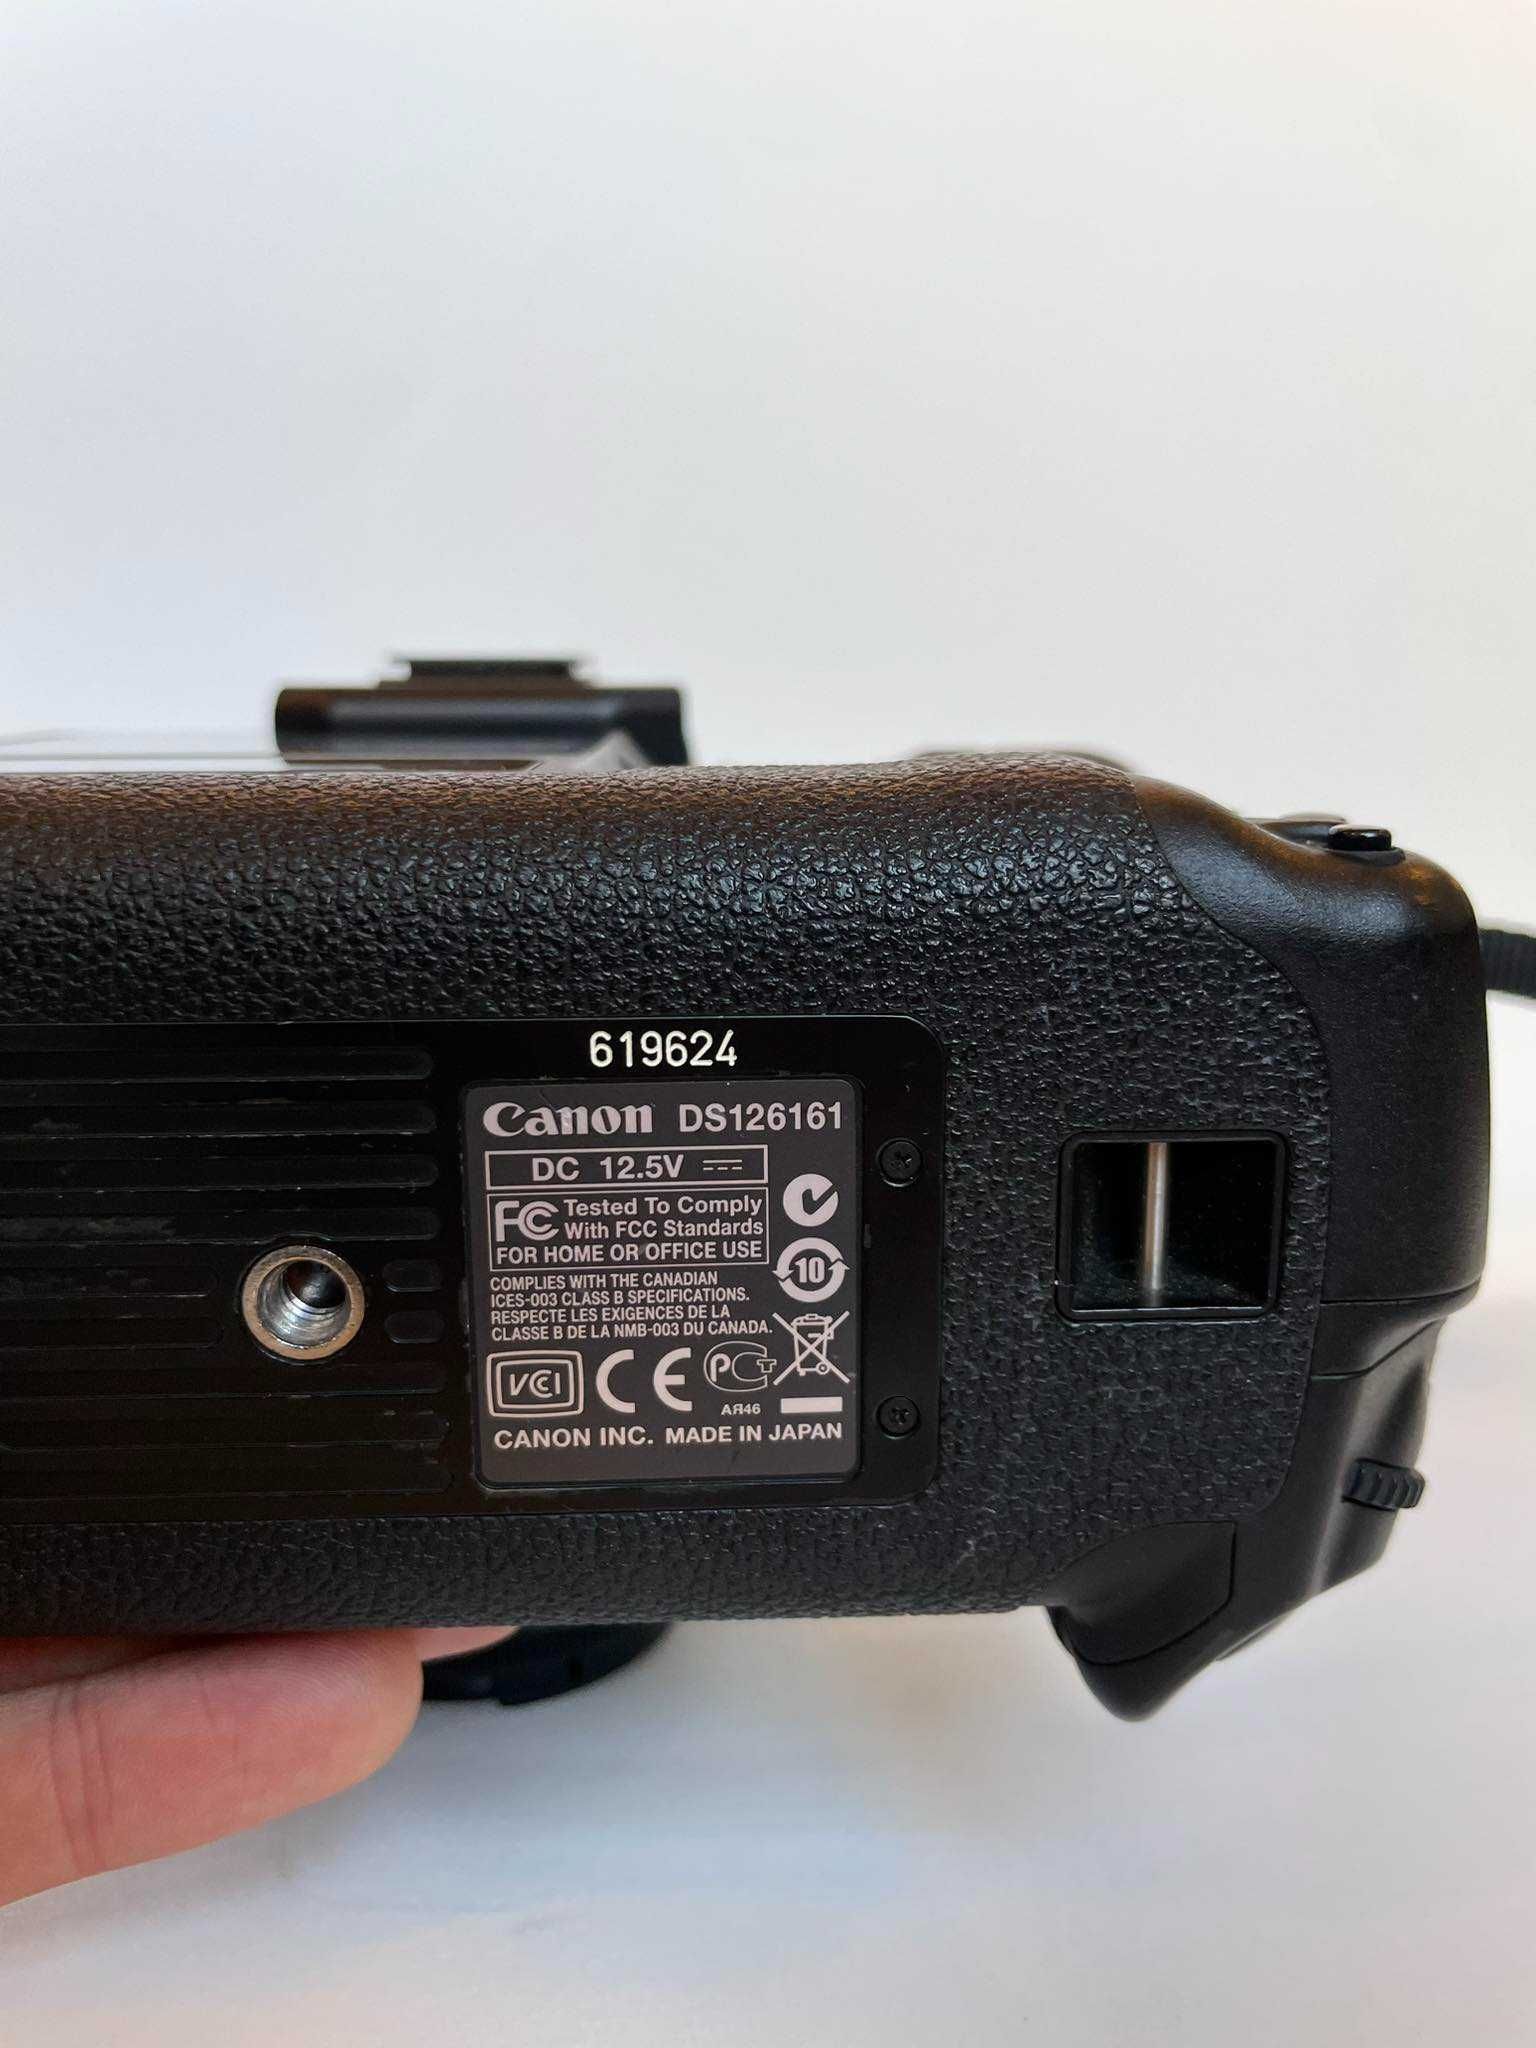 W-WA zestaw: Canon 1Ds Mark III + Obiektyw EF 1.8, 50mm z ładowarką